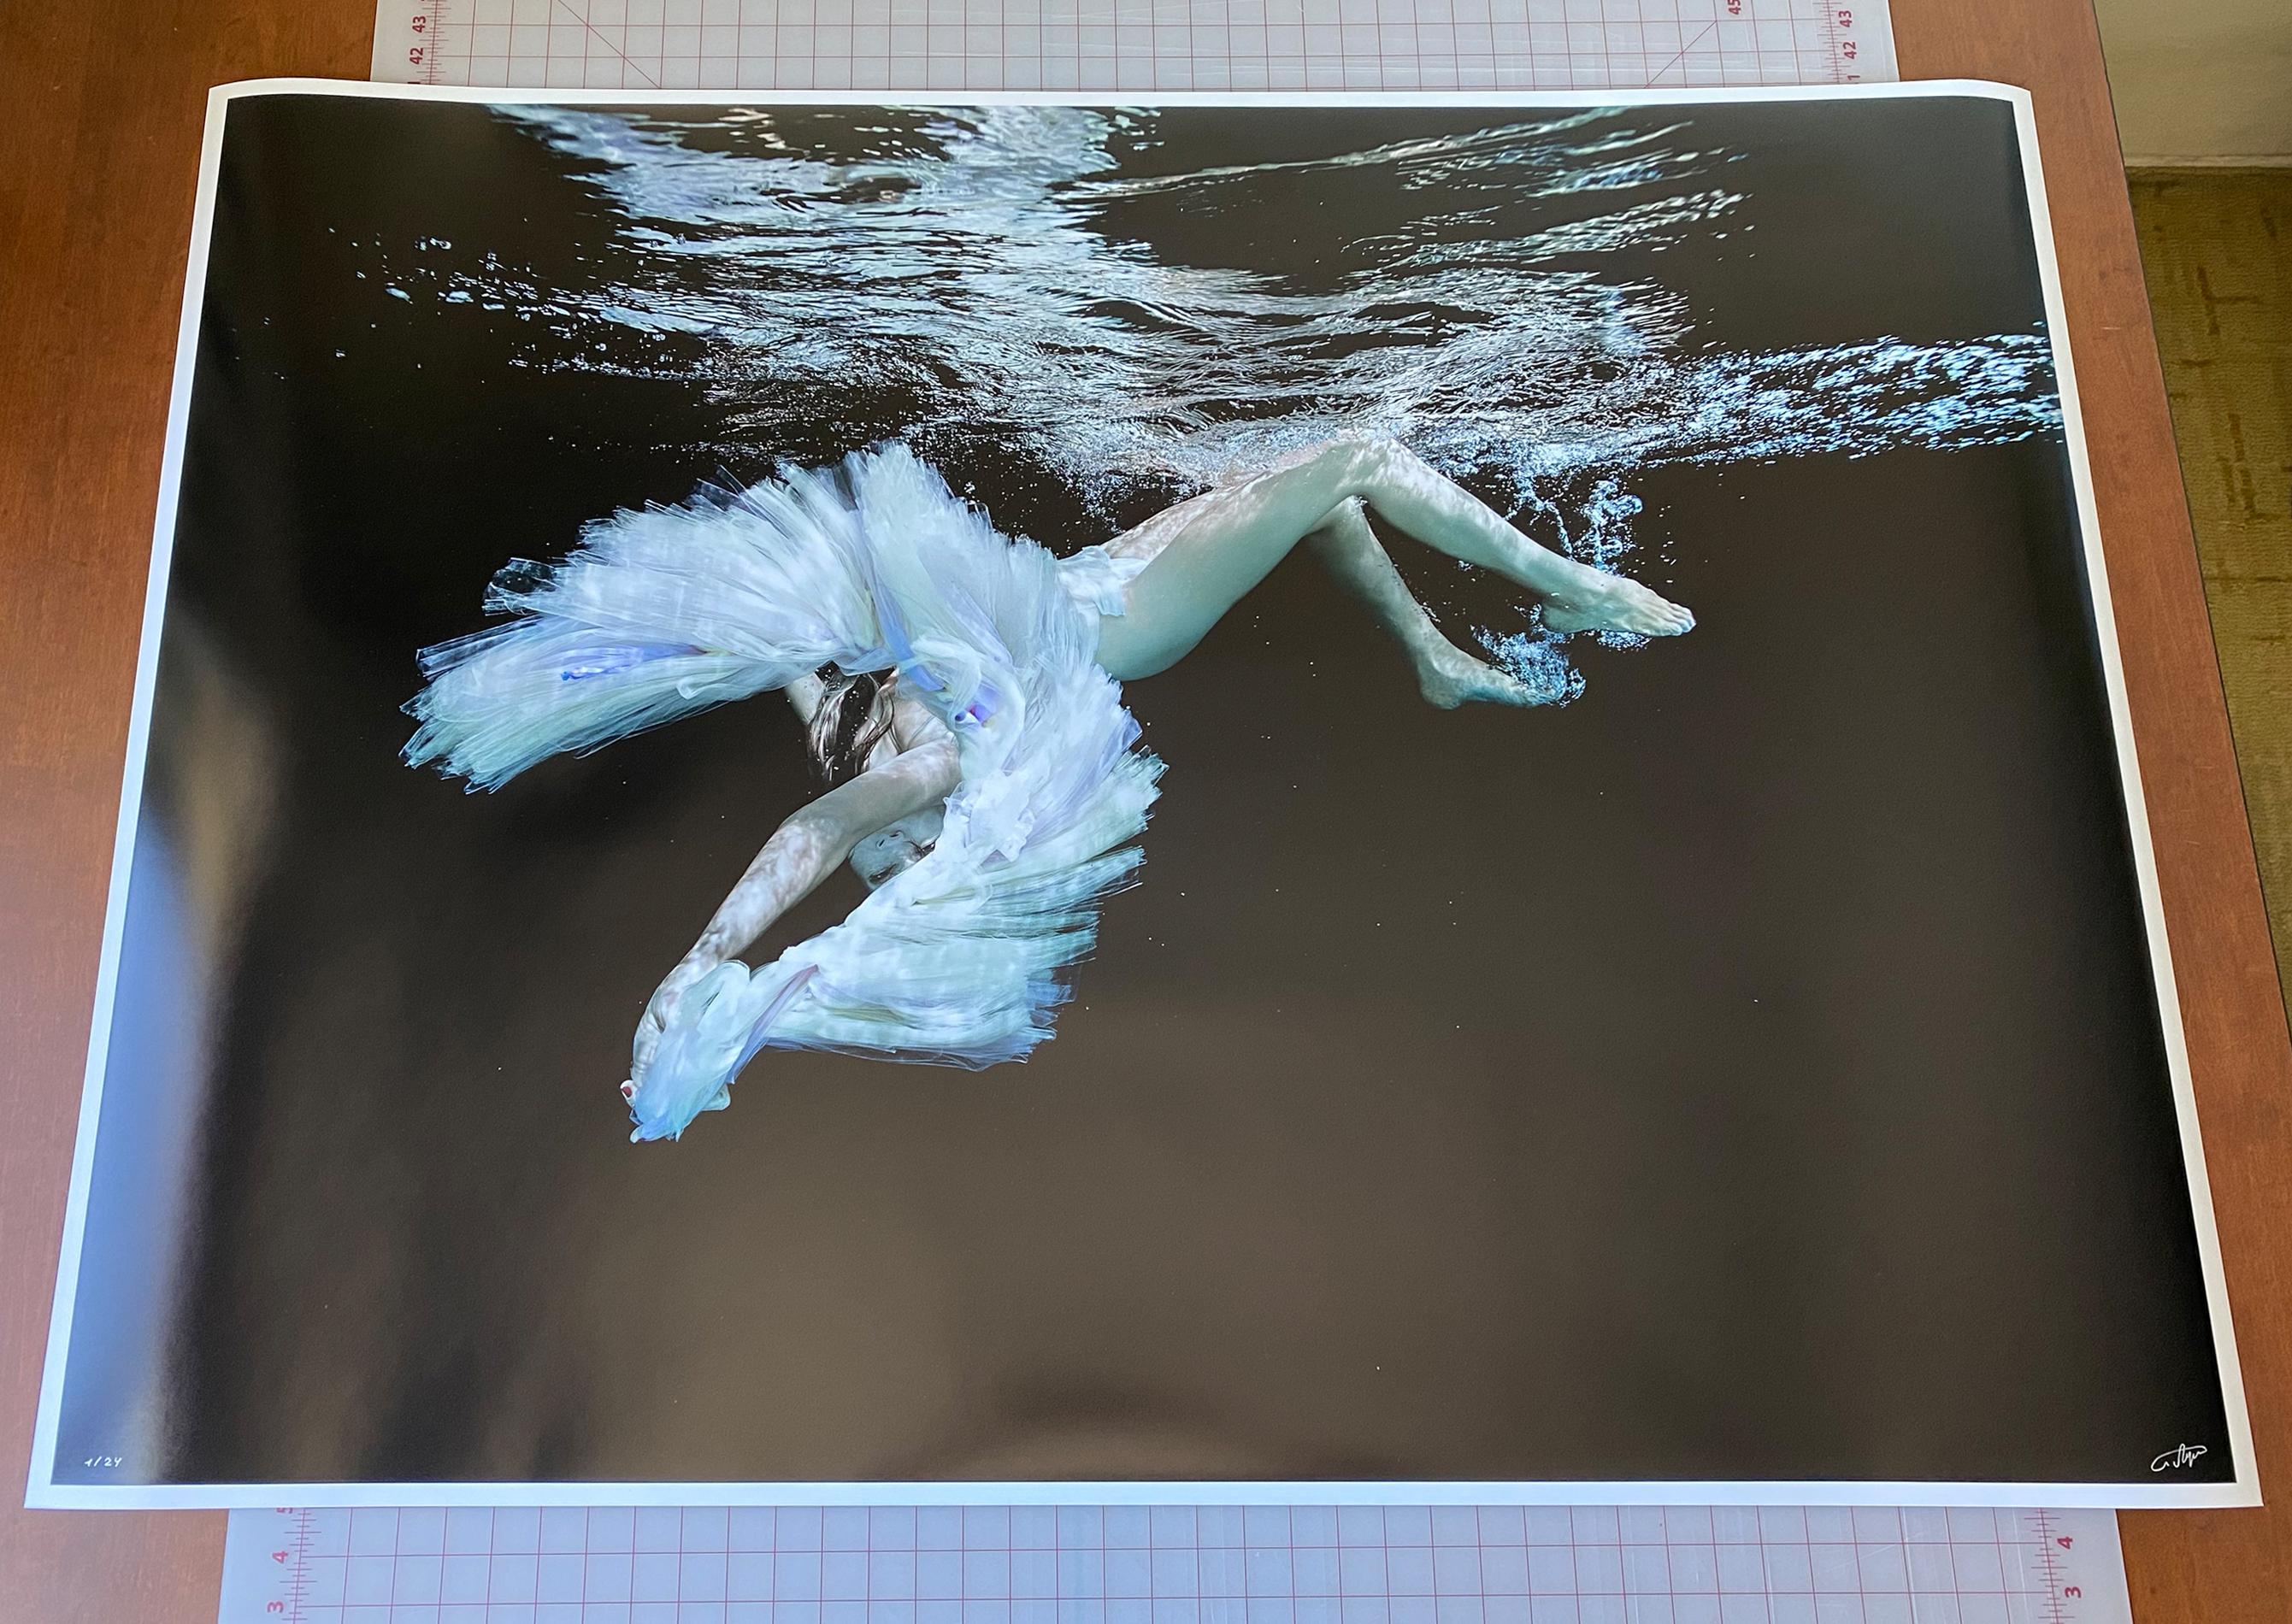 Ballett - Unterwasser-Schwarz-Weiß-Aktfotografie - Archivalisches Pigment 36